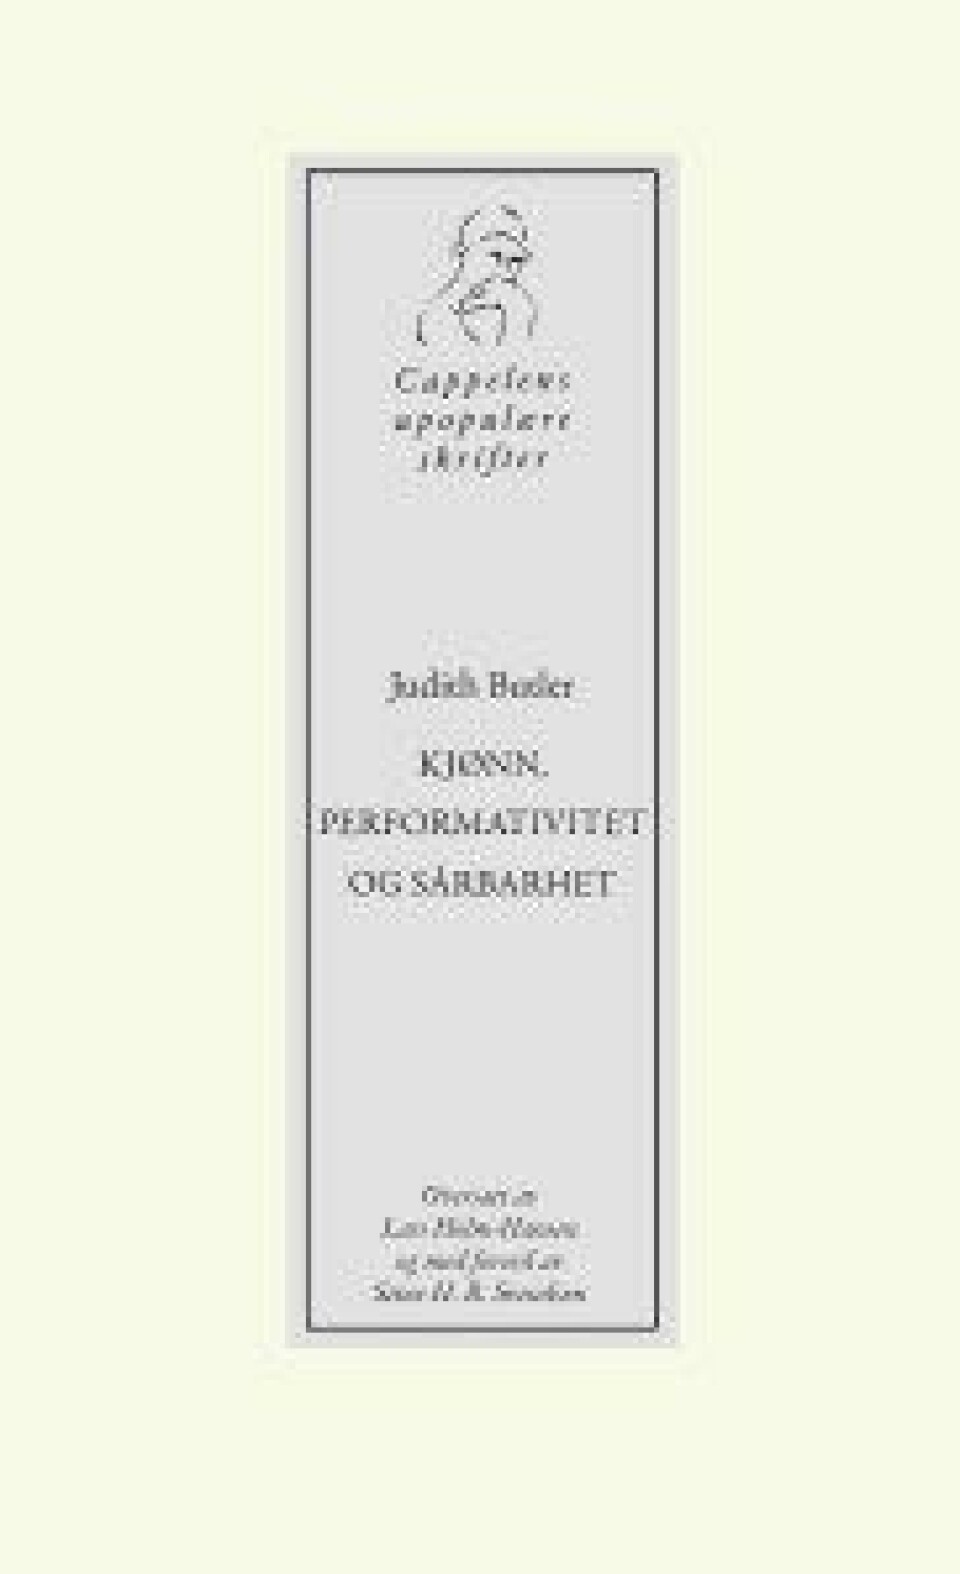 Kjønn, performativitet og sårbarhet av Judith Butler, oversatt av Lars Holm-Hansen og med forord av Stine H. B. Svendsen. Cappelen Damm, 2020.